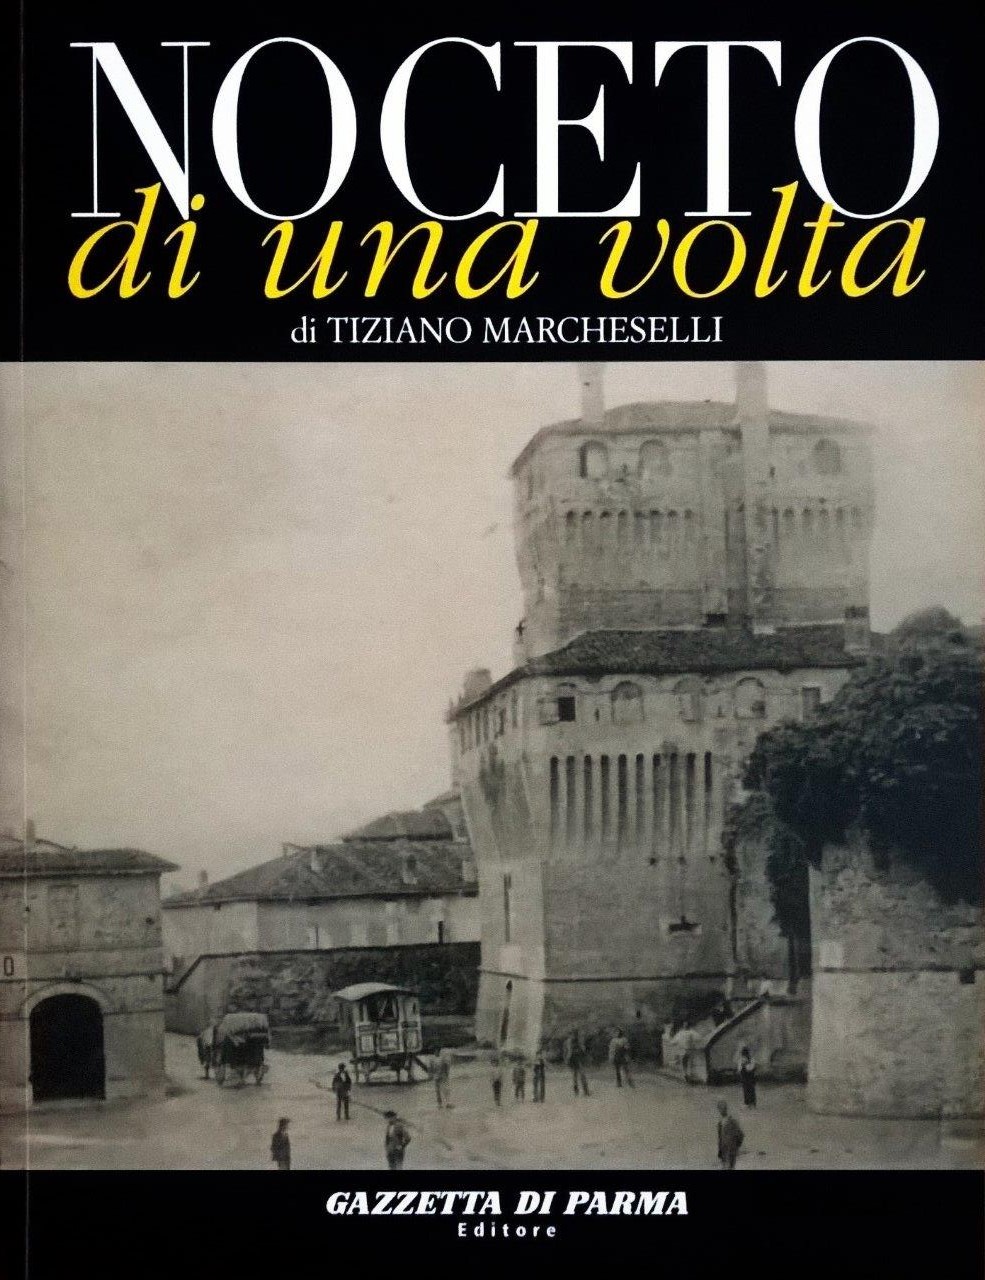 Tiziano Marcheselli, Noceto di una volta, Parma, Gazzetta di Parma Editore (Grafiche Step Editrice), 2007, prefazione di Fabio Fecci